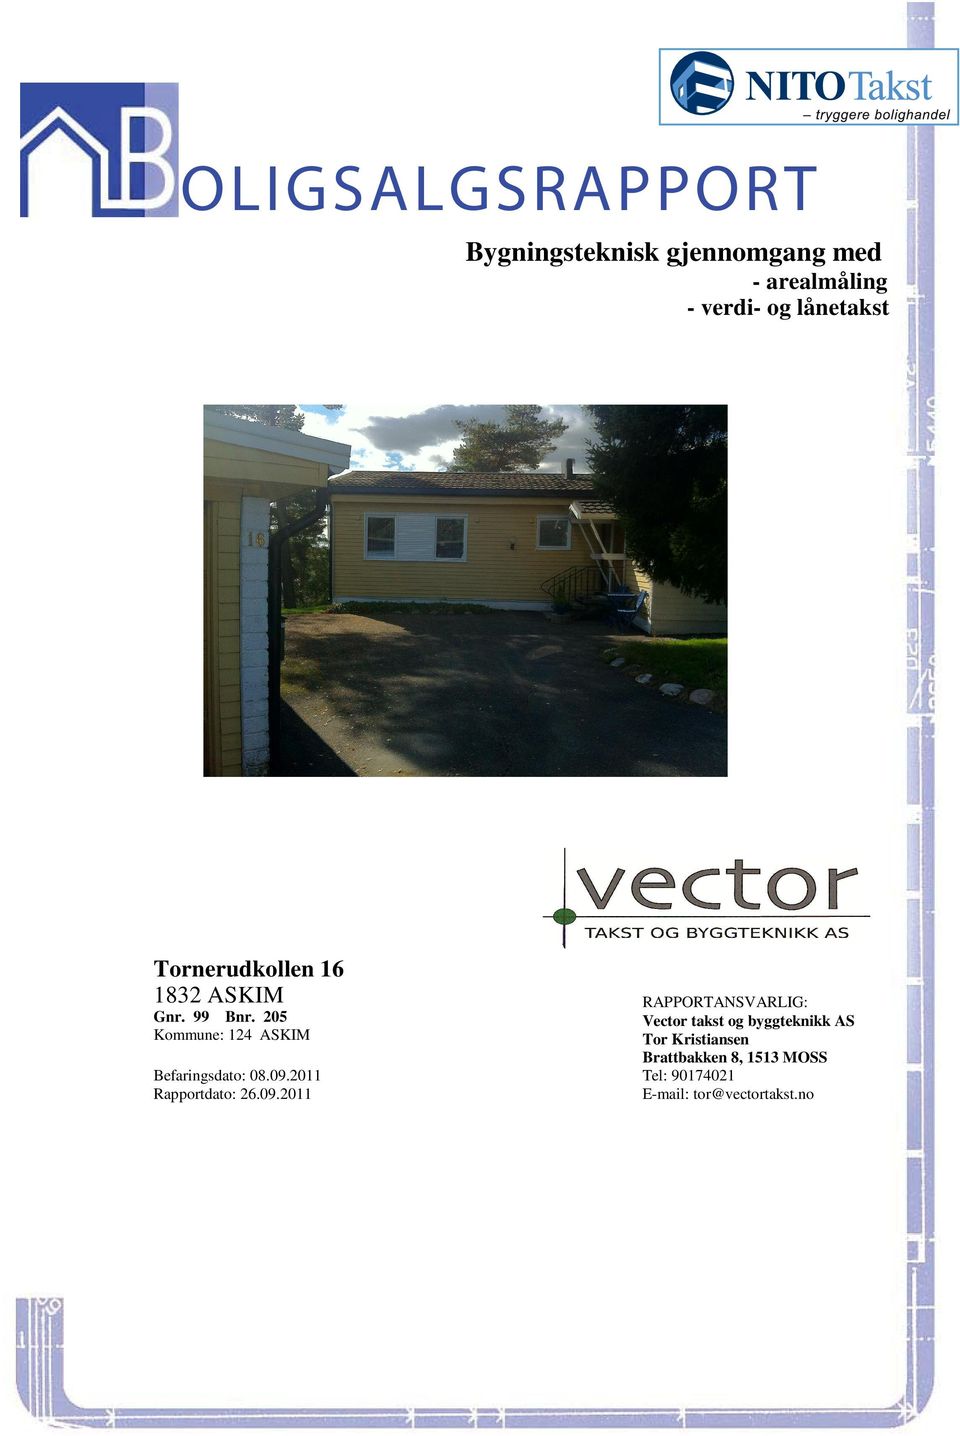 99 Bnr 205 Vector takst og byggteknikk AS Kommune: 124 ASKIM Tor